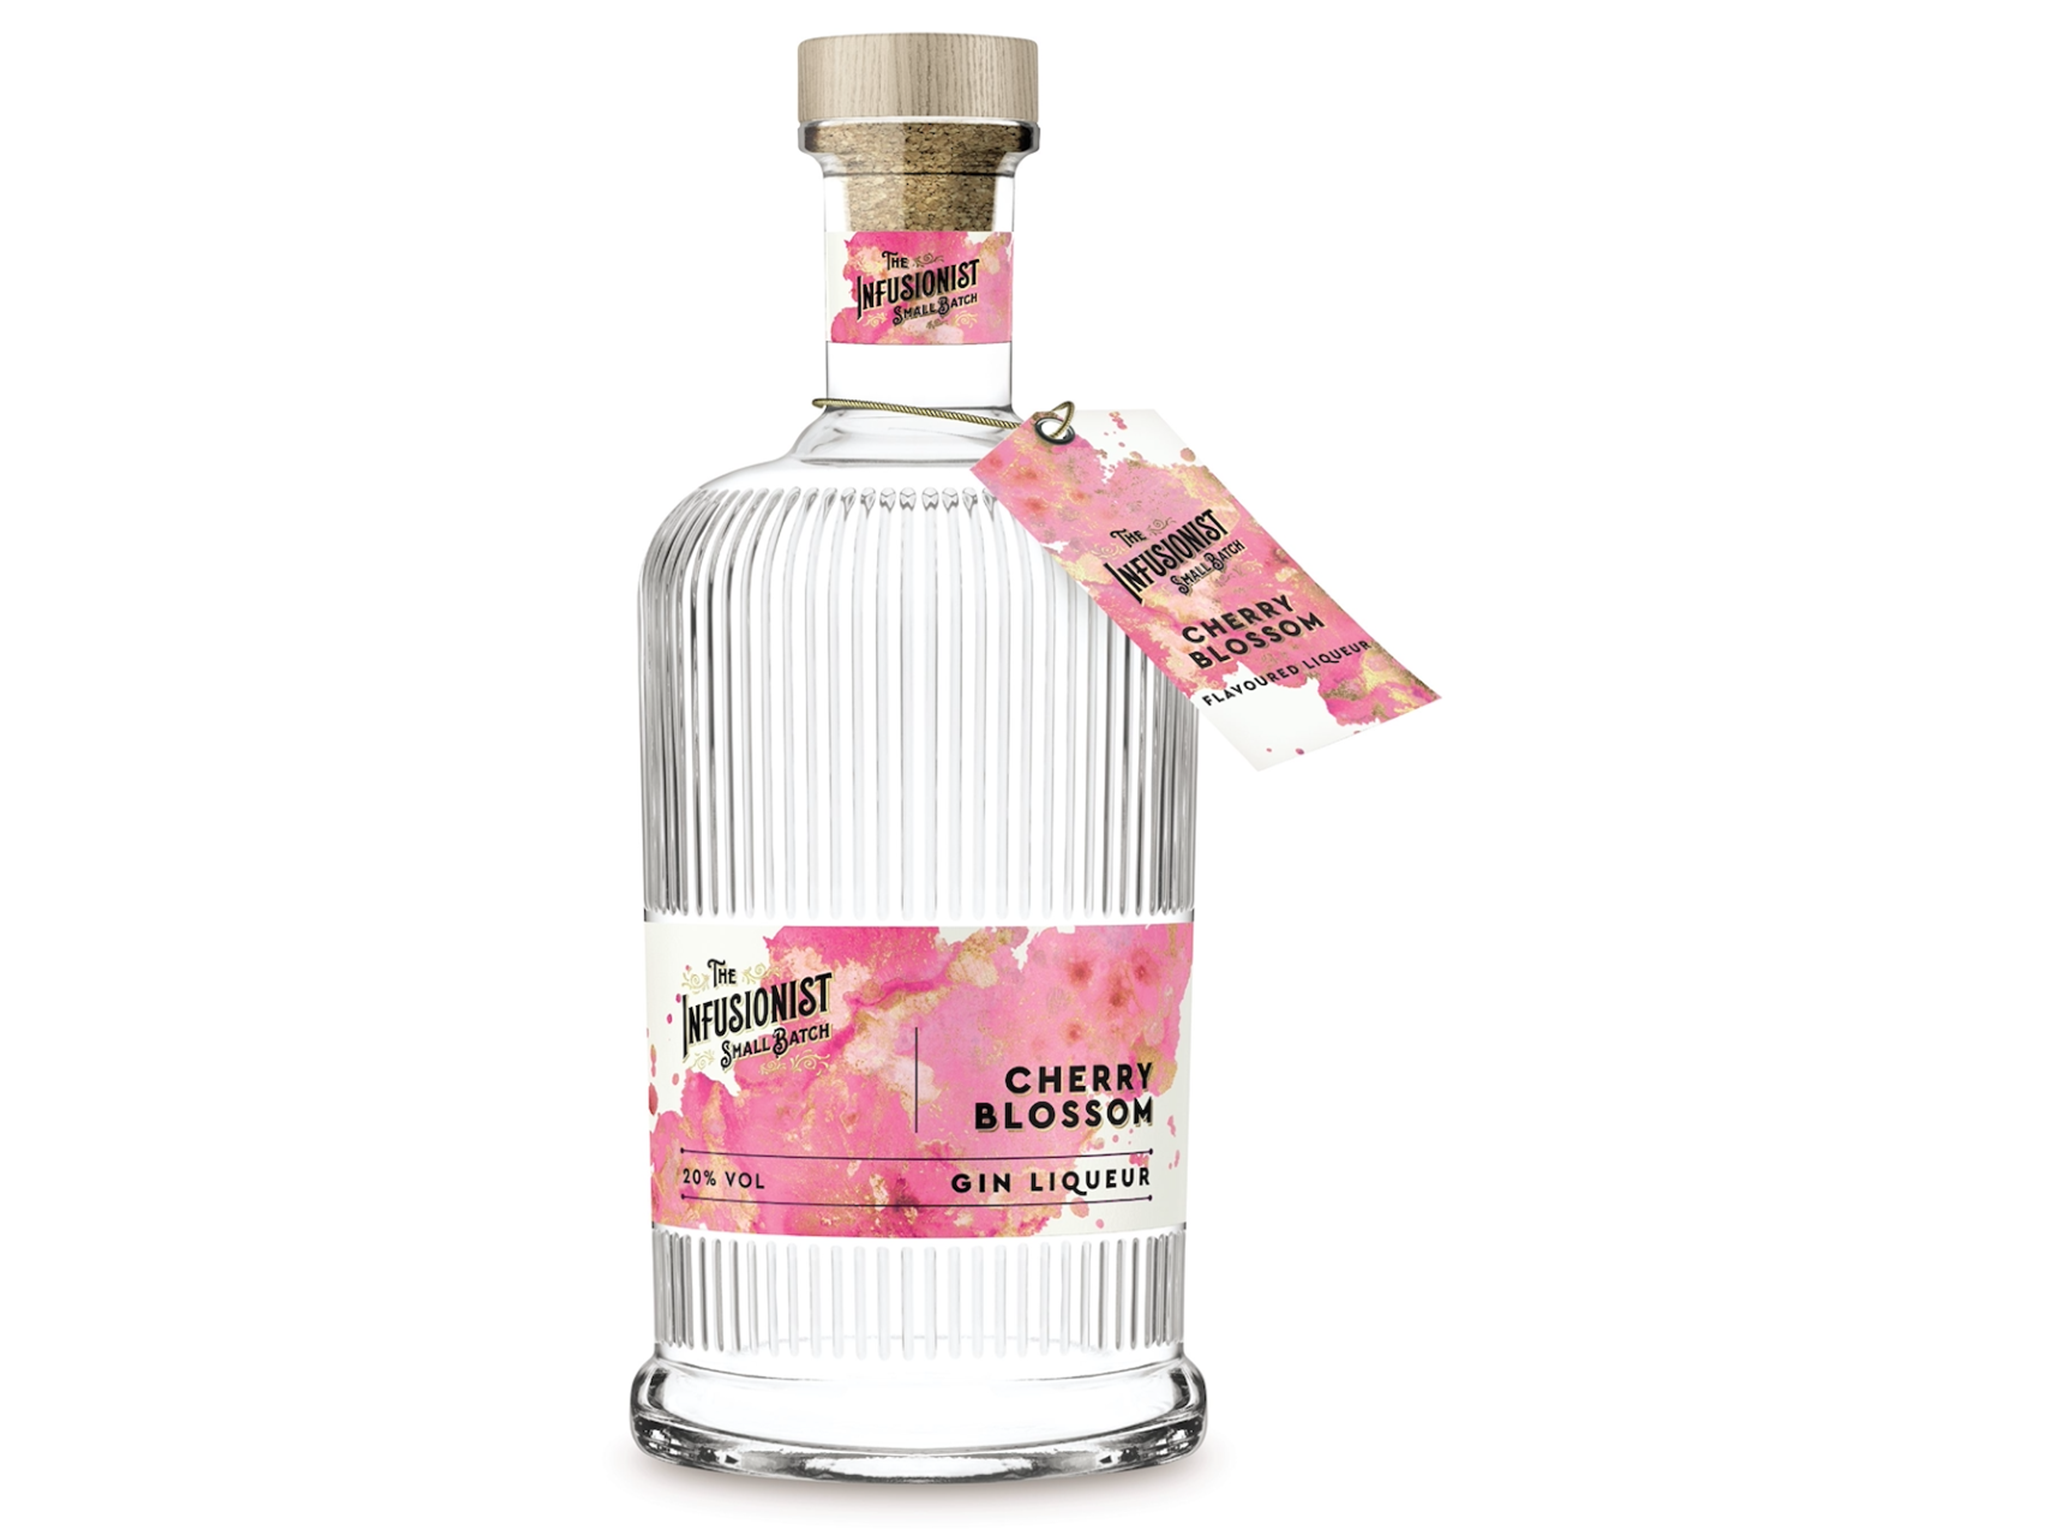 AKORI Cherry Blossom, Gin Premium